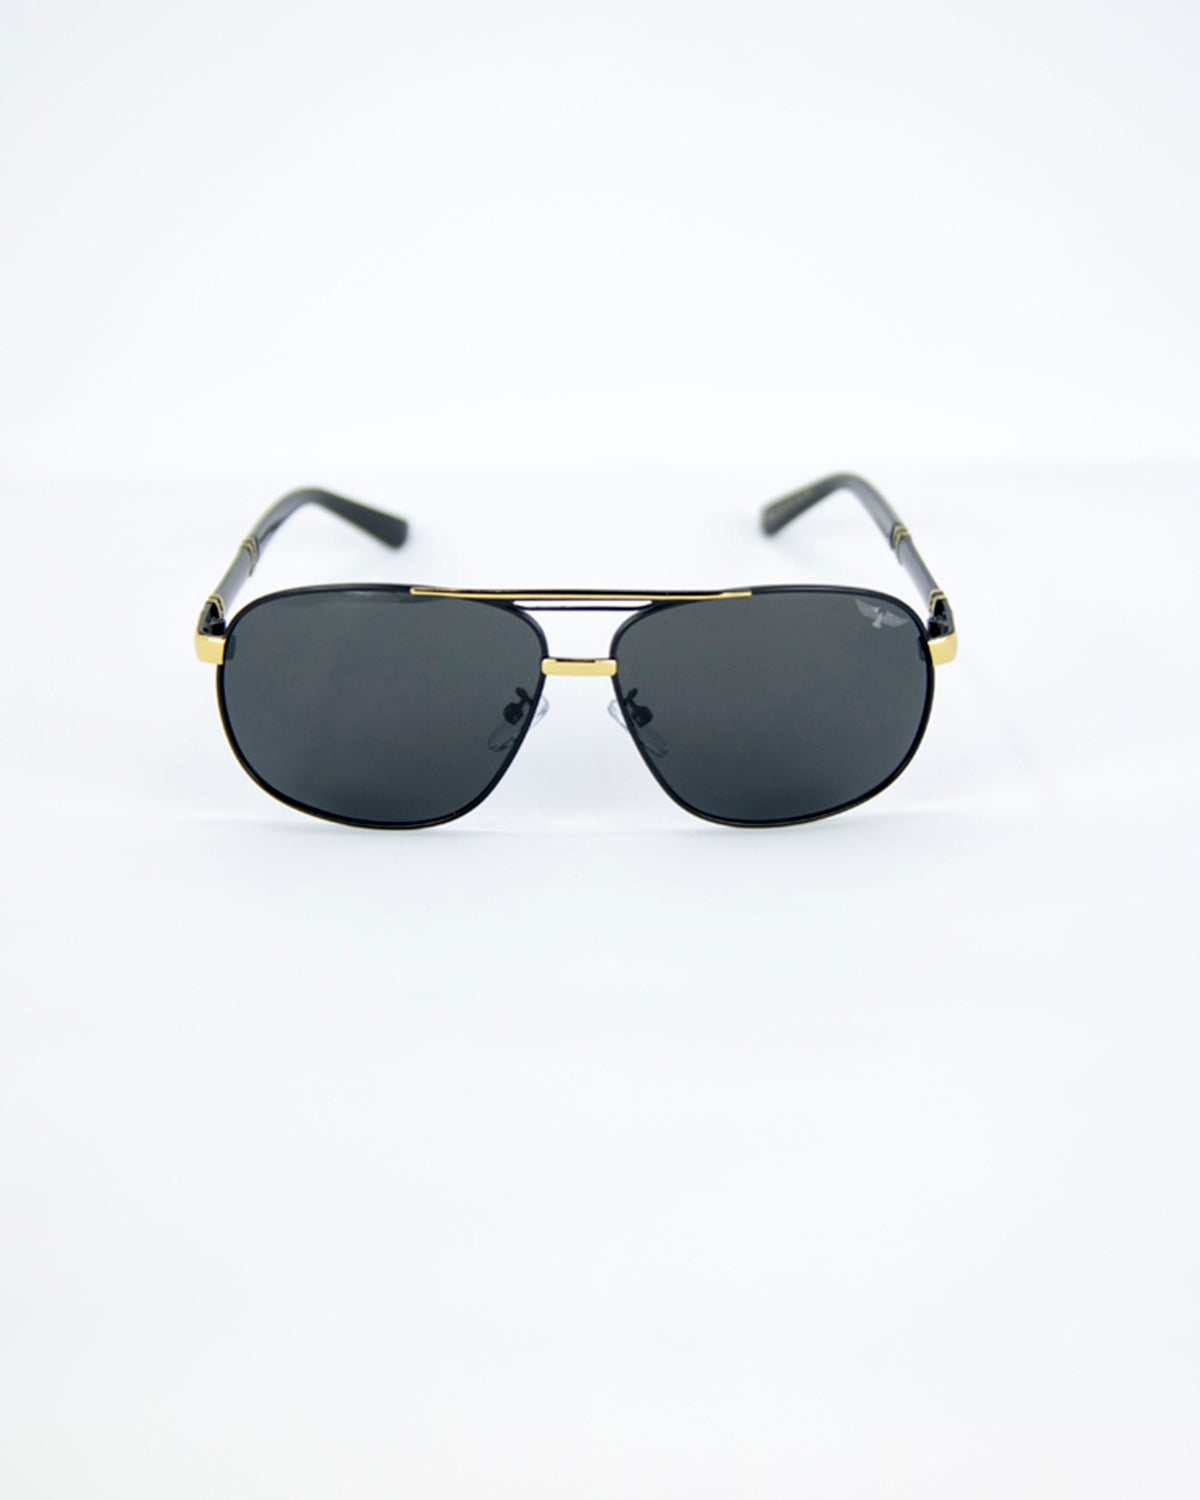 Post Malone Sunglasses: Post Malone x Arnette Eyewear at Sunglass Hut –  Rolling Stone